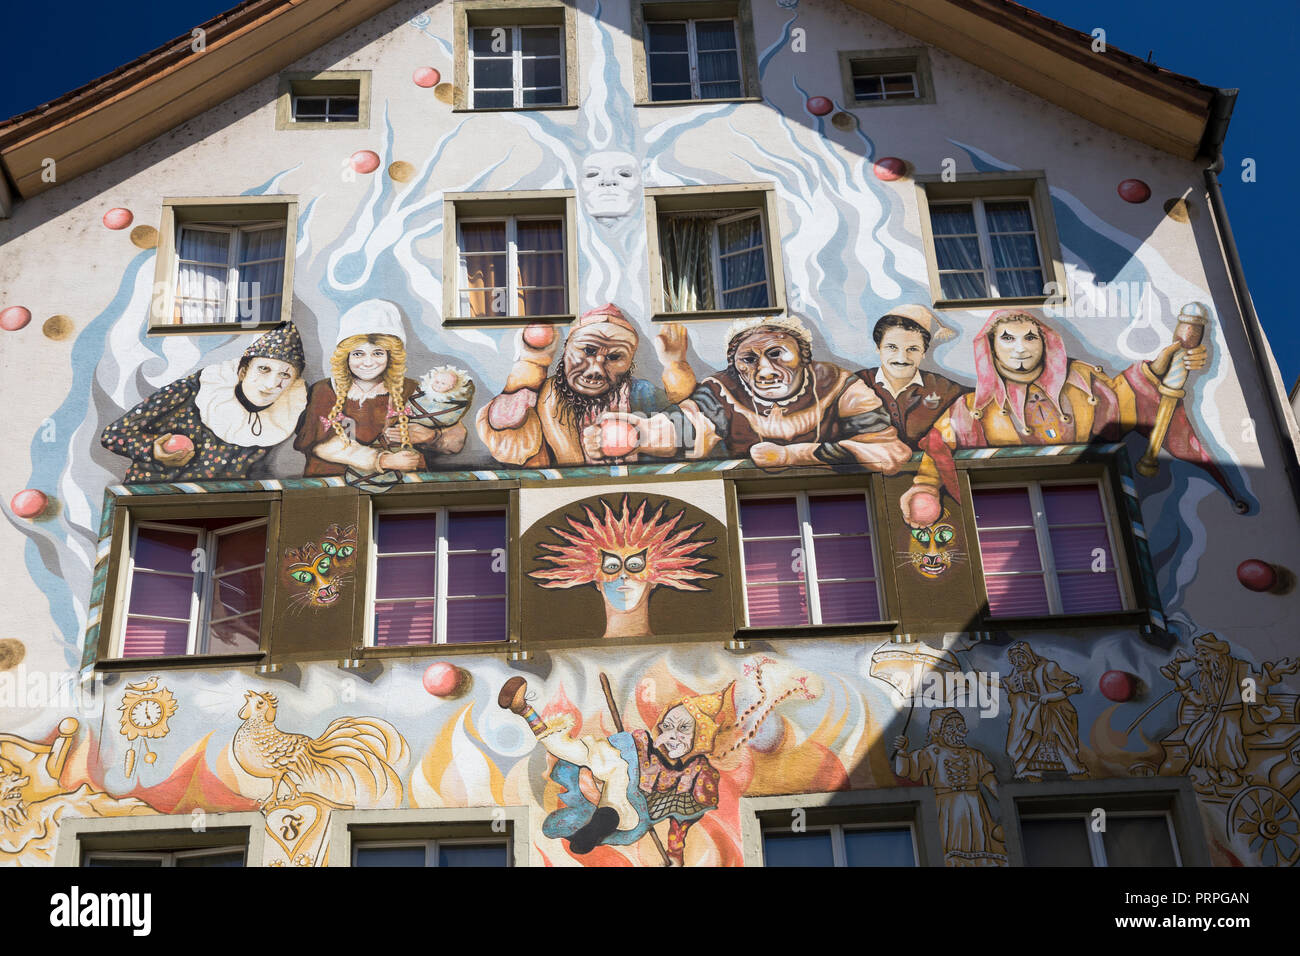 Farbenfrohen Wandmalereien an der Fassade des Restaurants Fritschi in  Sternenplatz, Luzern, Schweiz Stockfotografie - Alamy